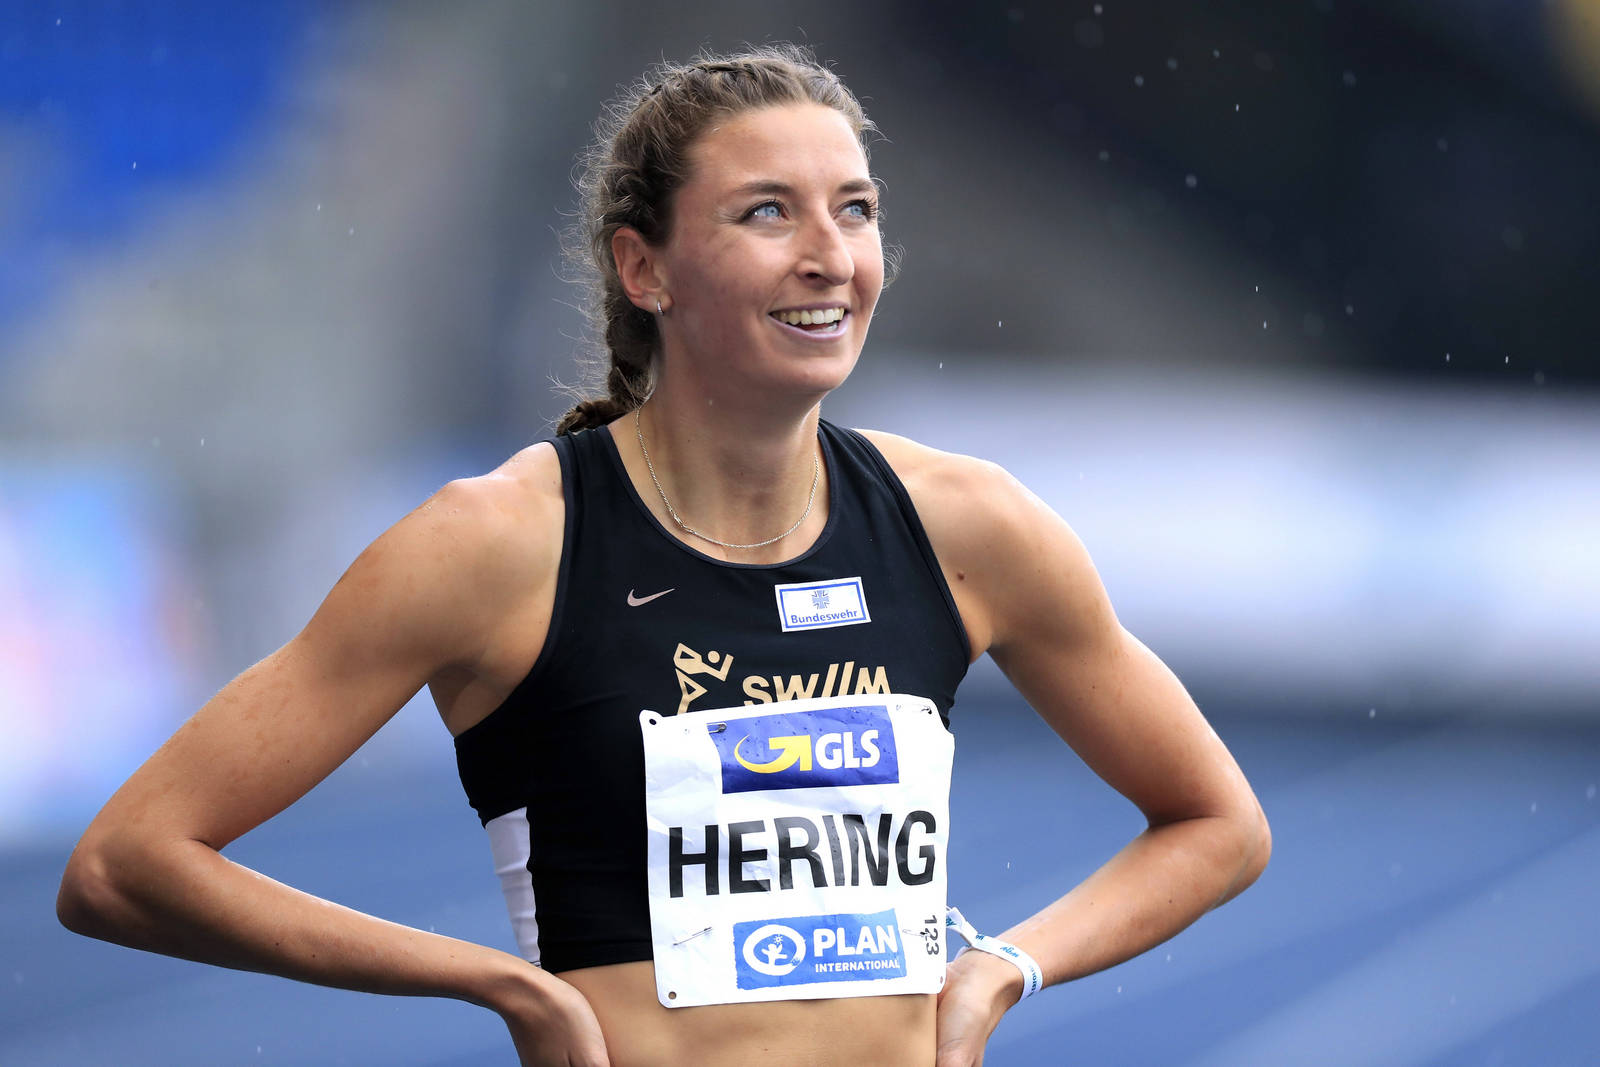 HERING Christina Deutsche Meisterin 800m DLV Deutsche Leichtathletik Meisterschaften 2021 in Braunschweig 2.Tag am 06.Ju